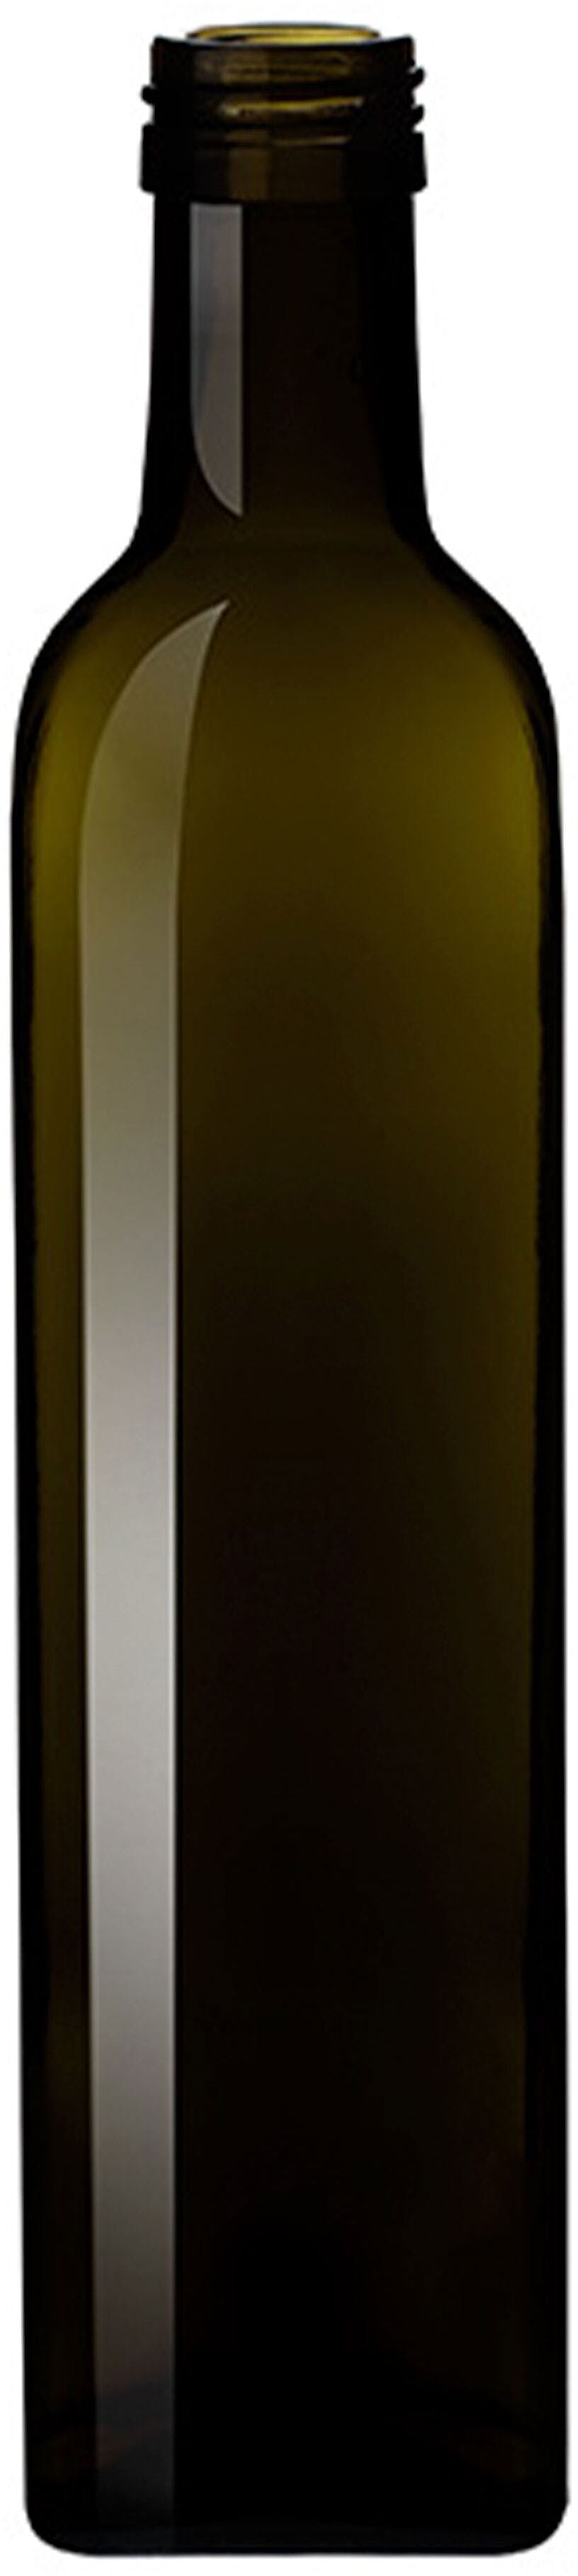 Bottle MARASCA 750 P31,5 VQ